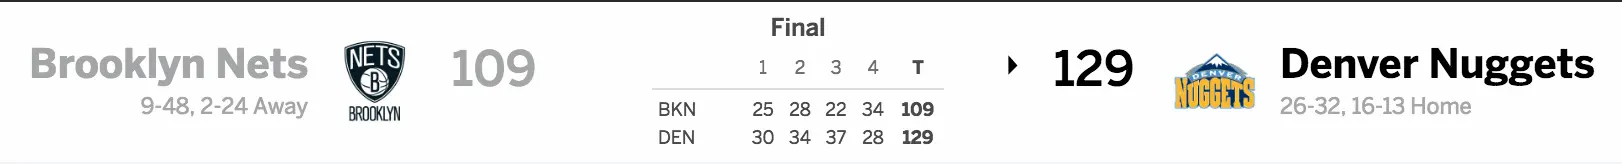 Brooklyn Nets vs. Denver Nuggets 02-24-17 Score